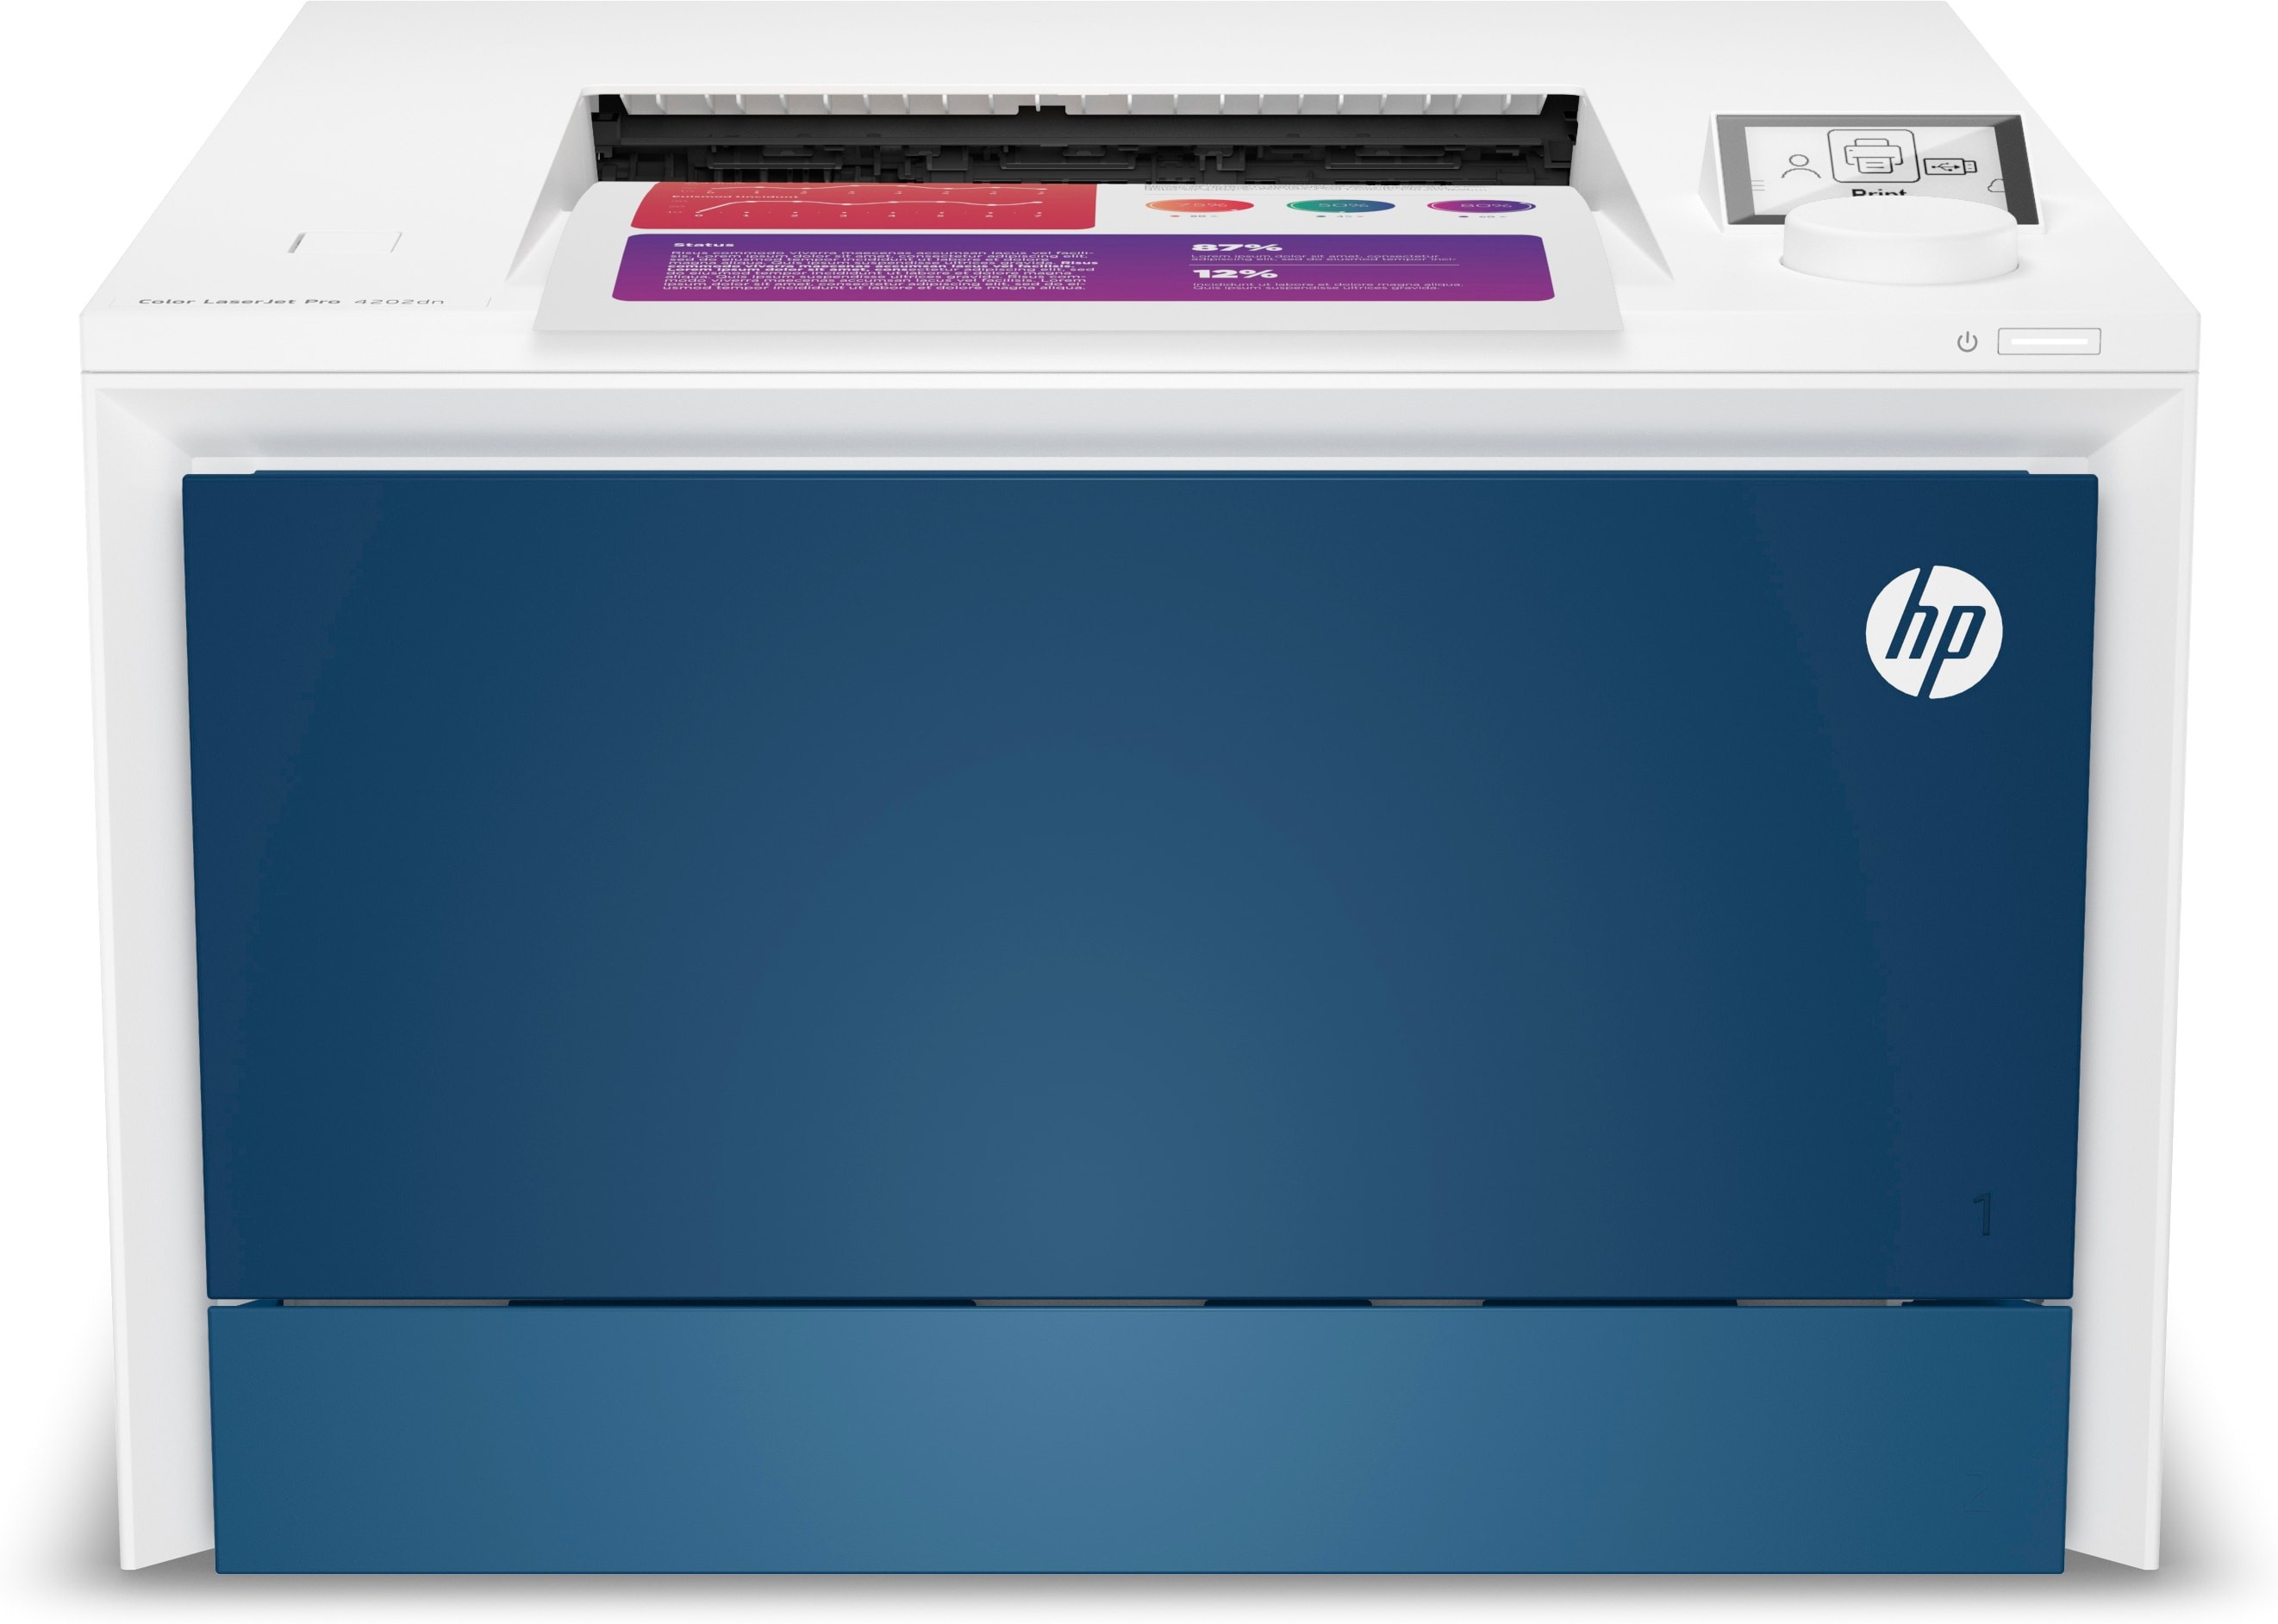 HP Color LaserJet Pro Stampante 4202dn, Colore, Stampante per Piccole e  medie imprese, Stampa, Stampa da smartphone o tablet; Stampa fronte/retro;  Vassoi ad alta capacità opzionali - Impresoras Lбser - Esseshop 